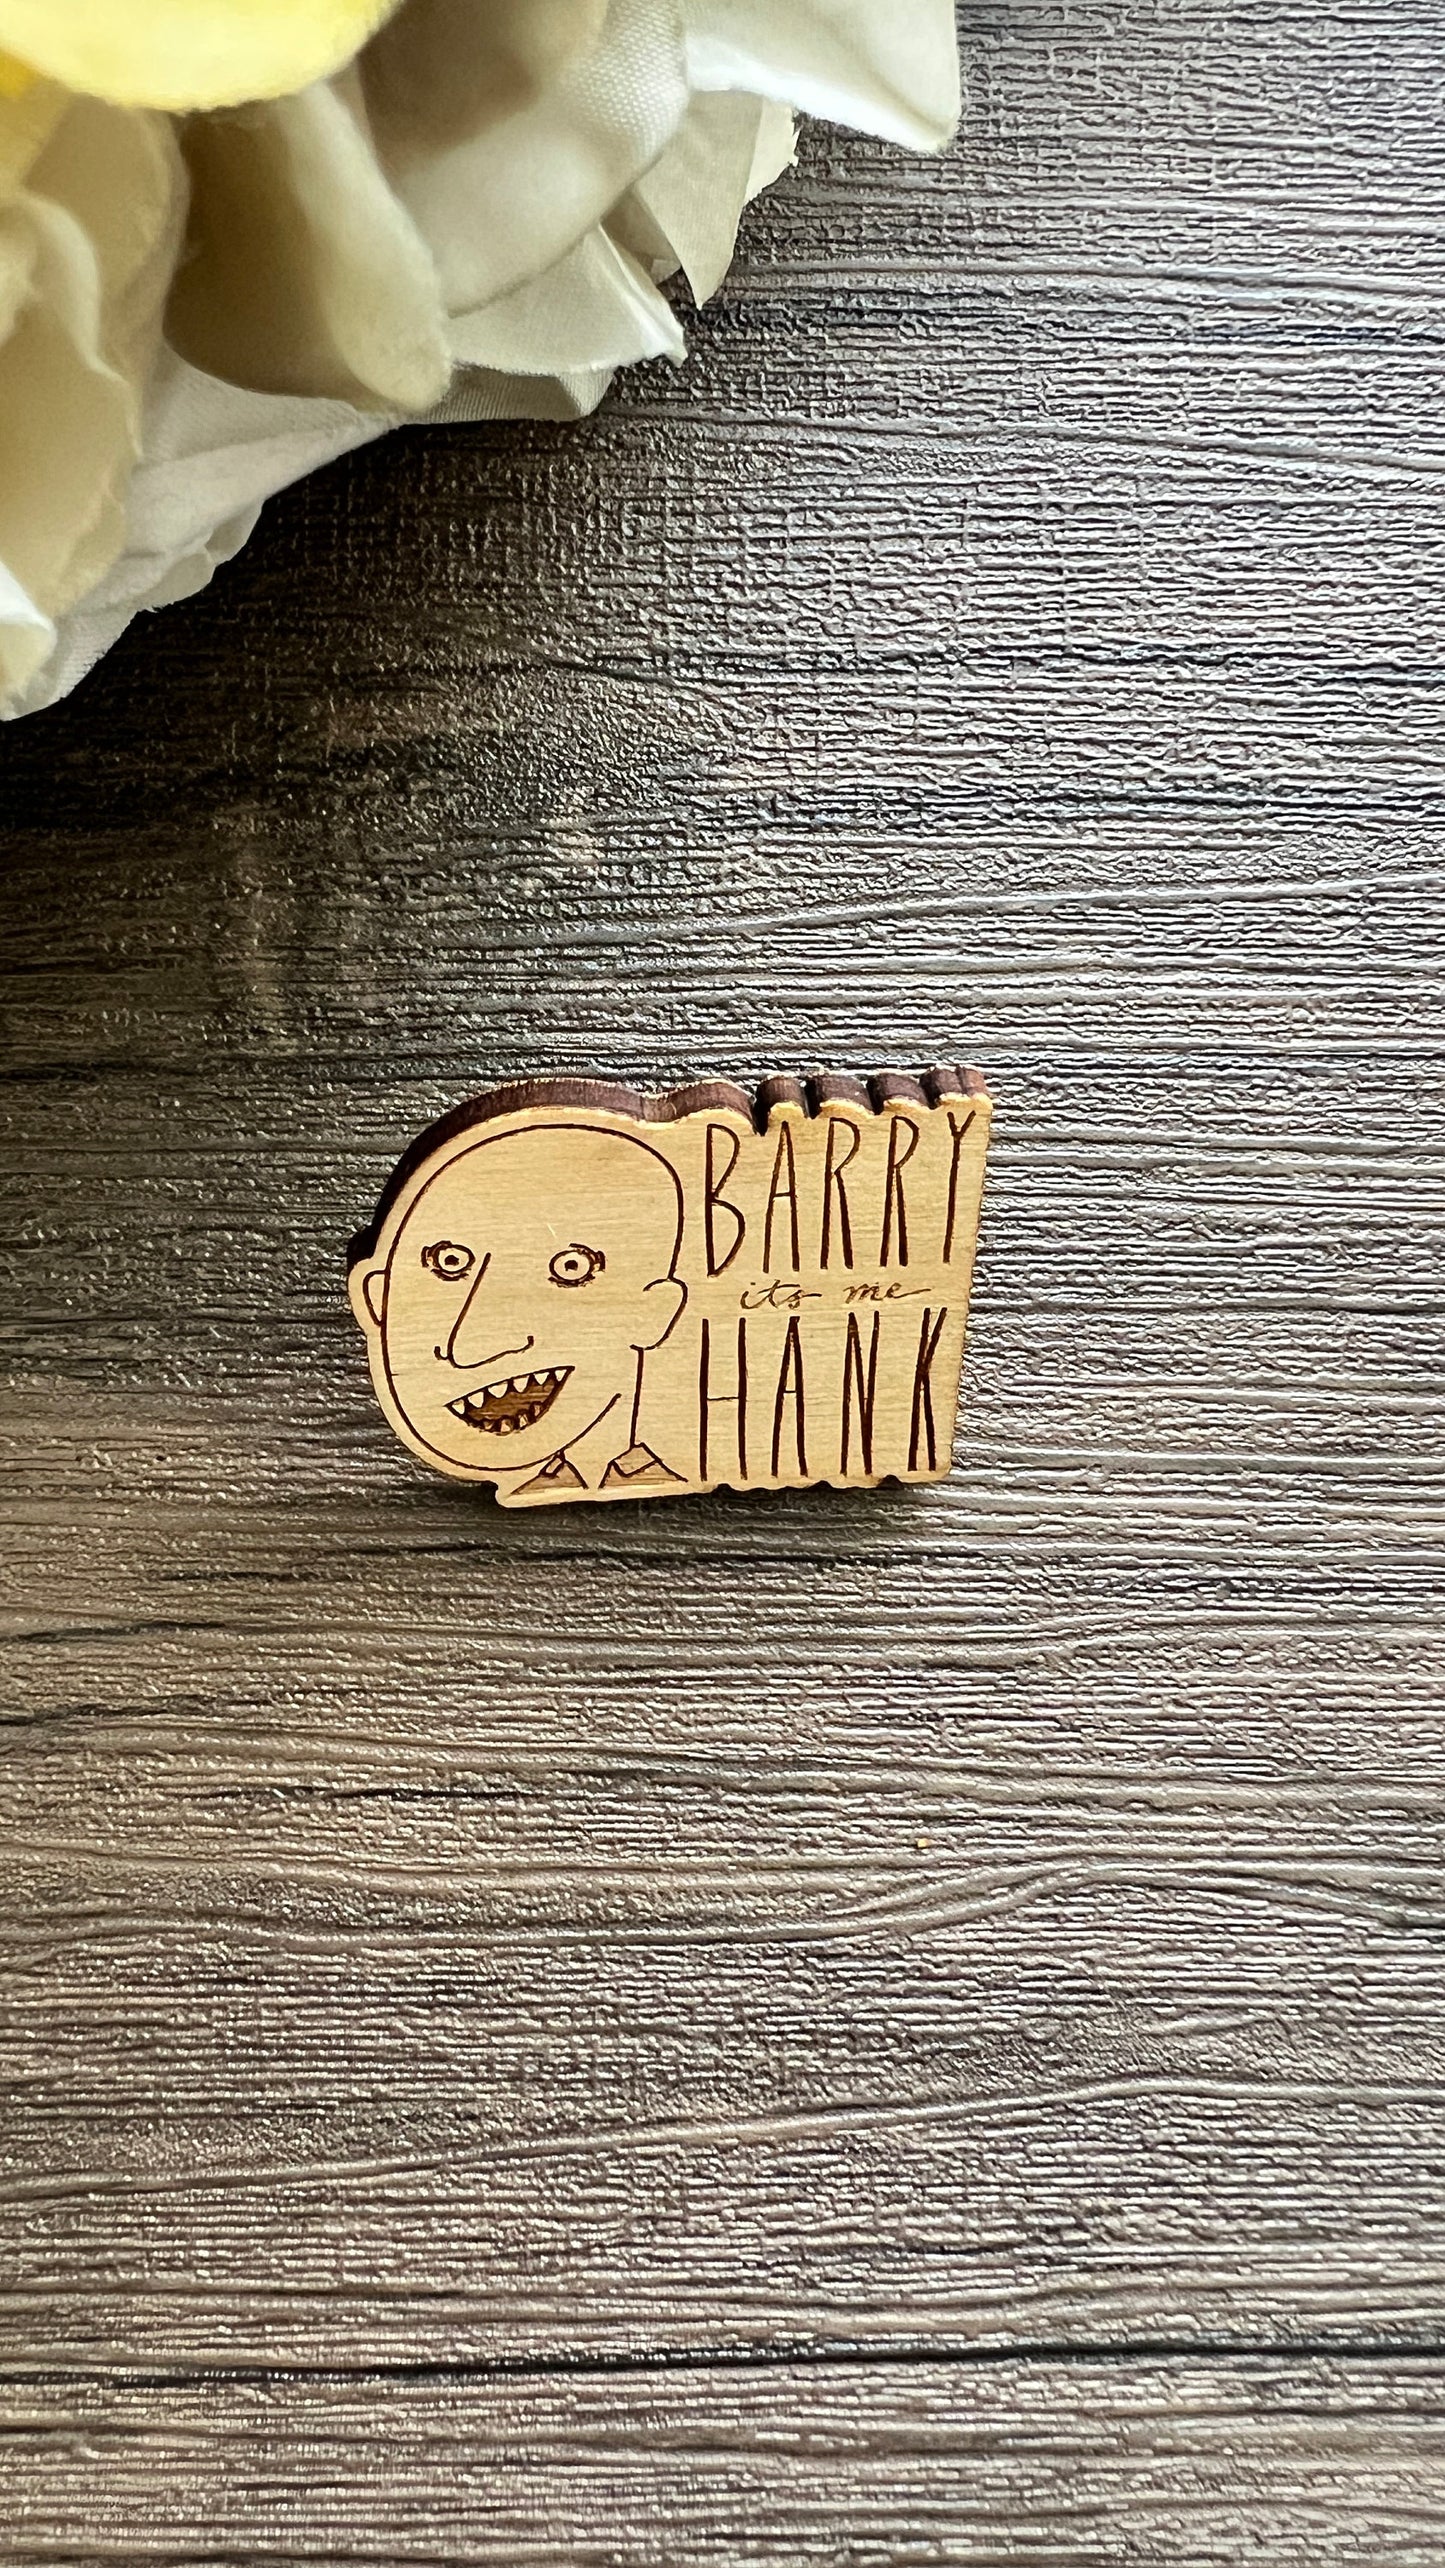 Barry NoHo Hank PIN - Lapel Pin - Barry HBO Pin, Barry It's Me Hank Pin, Barry Pin, NoHo Hank Pin, Bill Hader Pin, North Hollywood Hank Pin